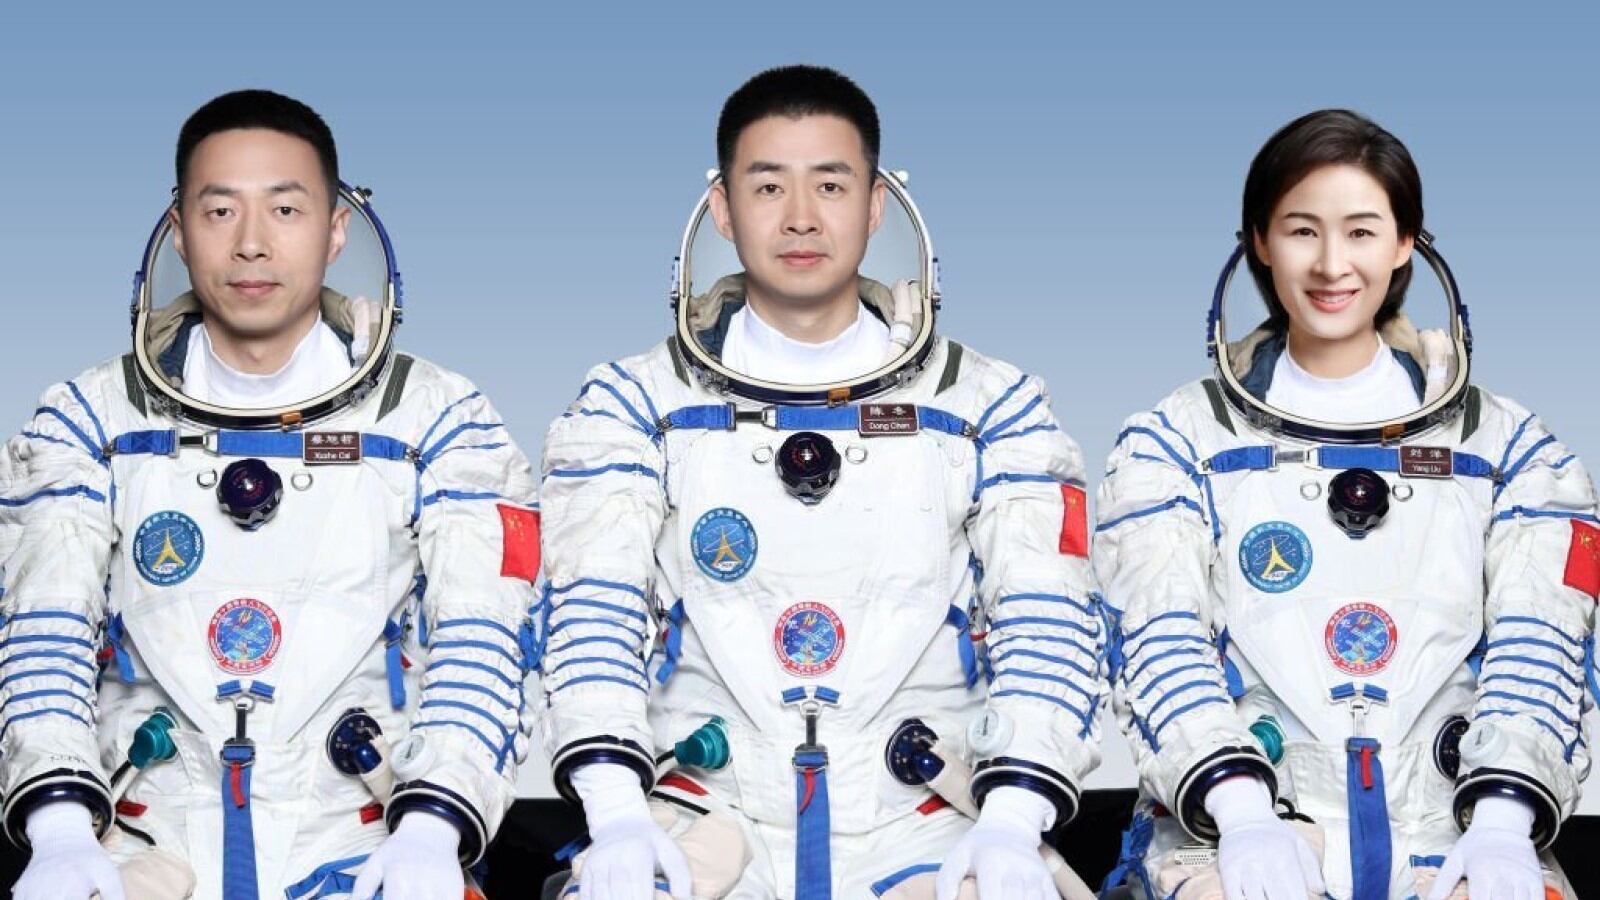 Los taikonautas (astronautas de China) Chen Dong, Liu Yang y Cai Xuzhe